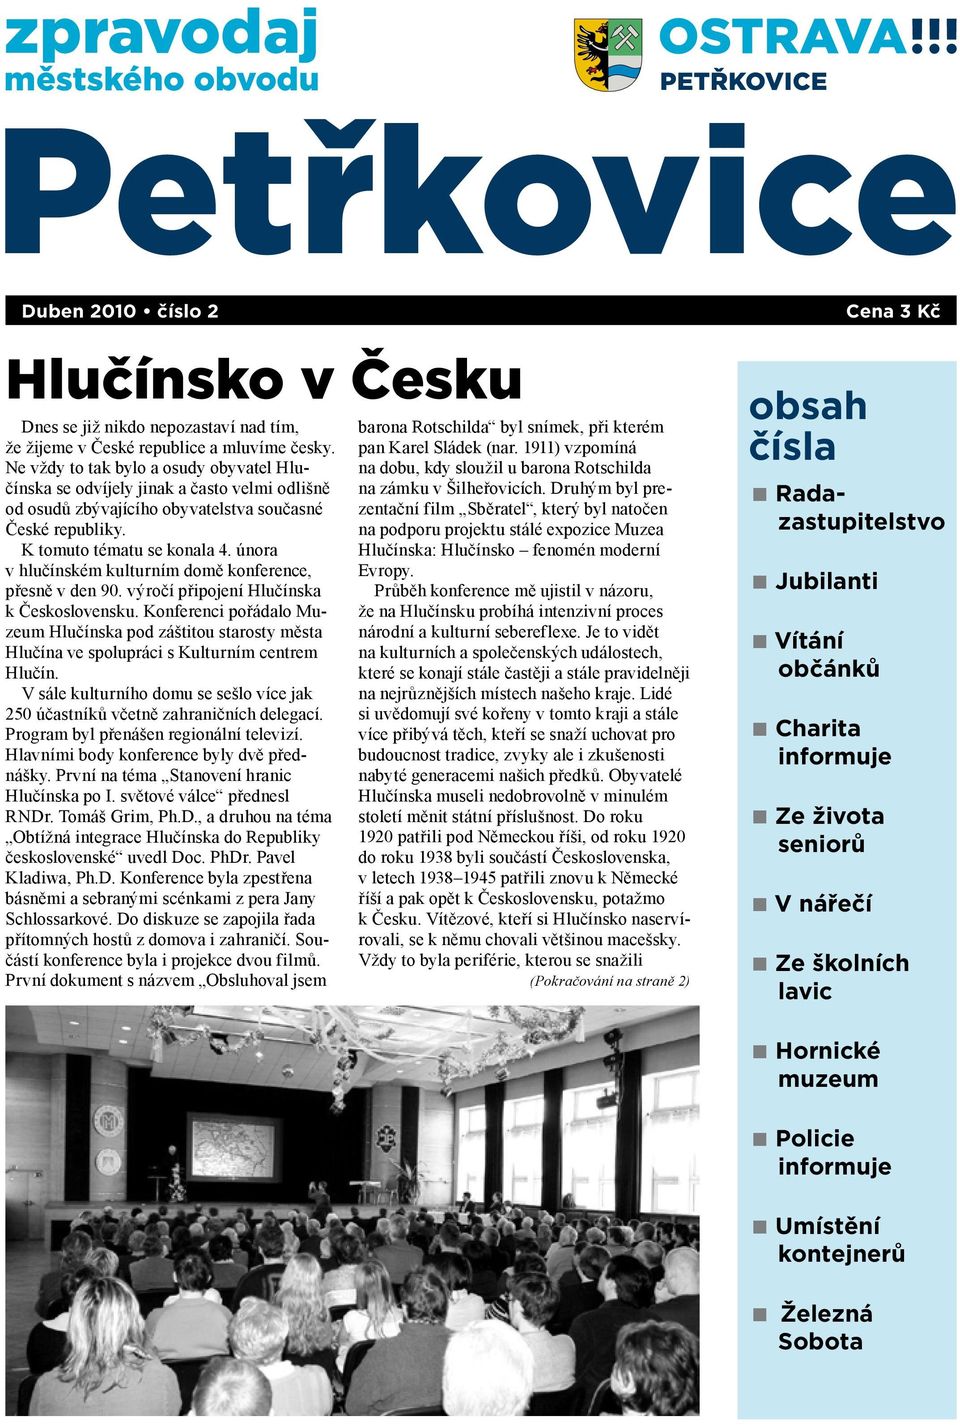 února v hlučínském kulturním domě konference, přesně v den 90. výročí připojení Hlučínska k Československu.